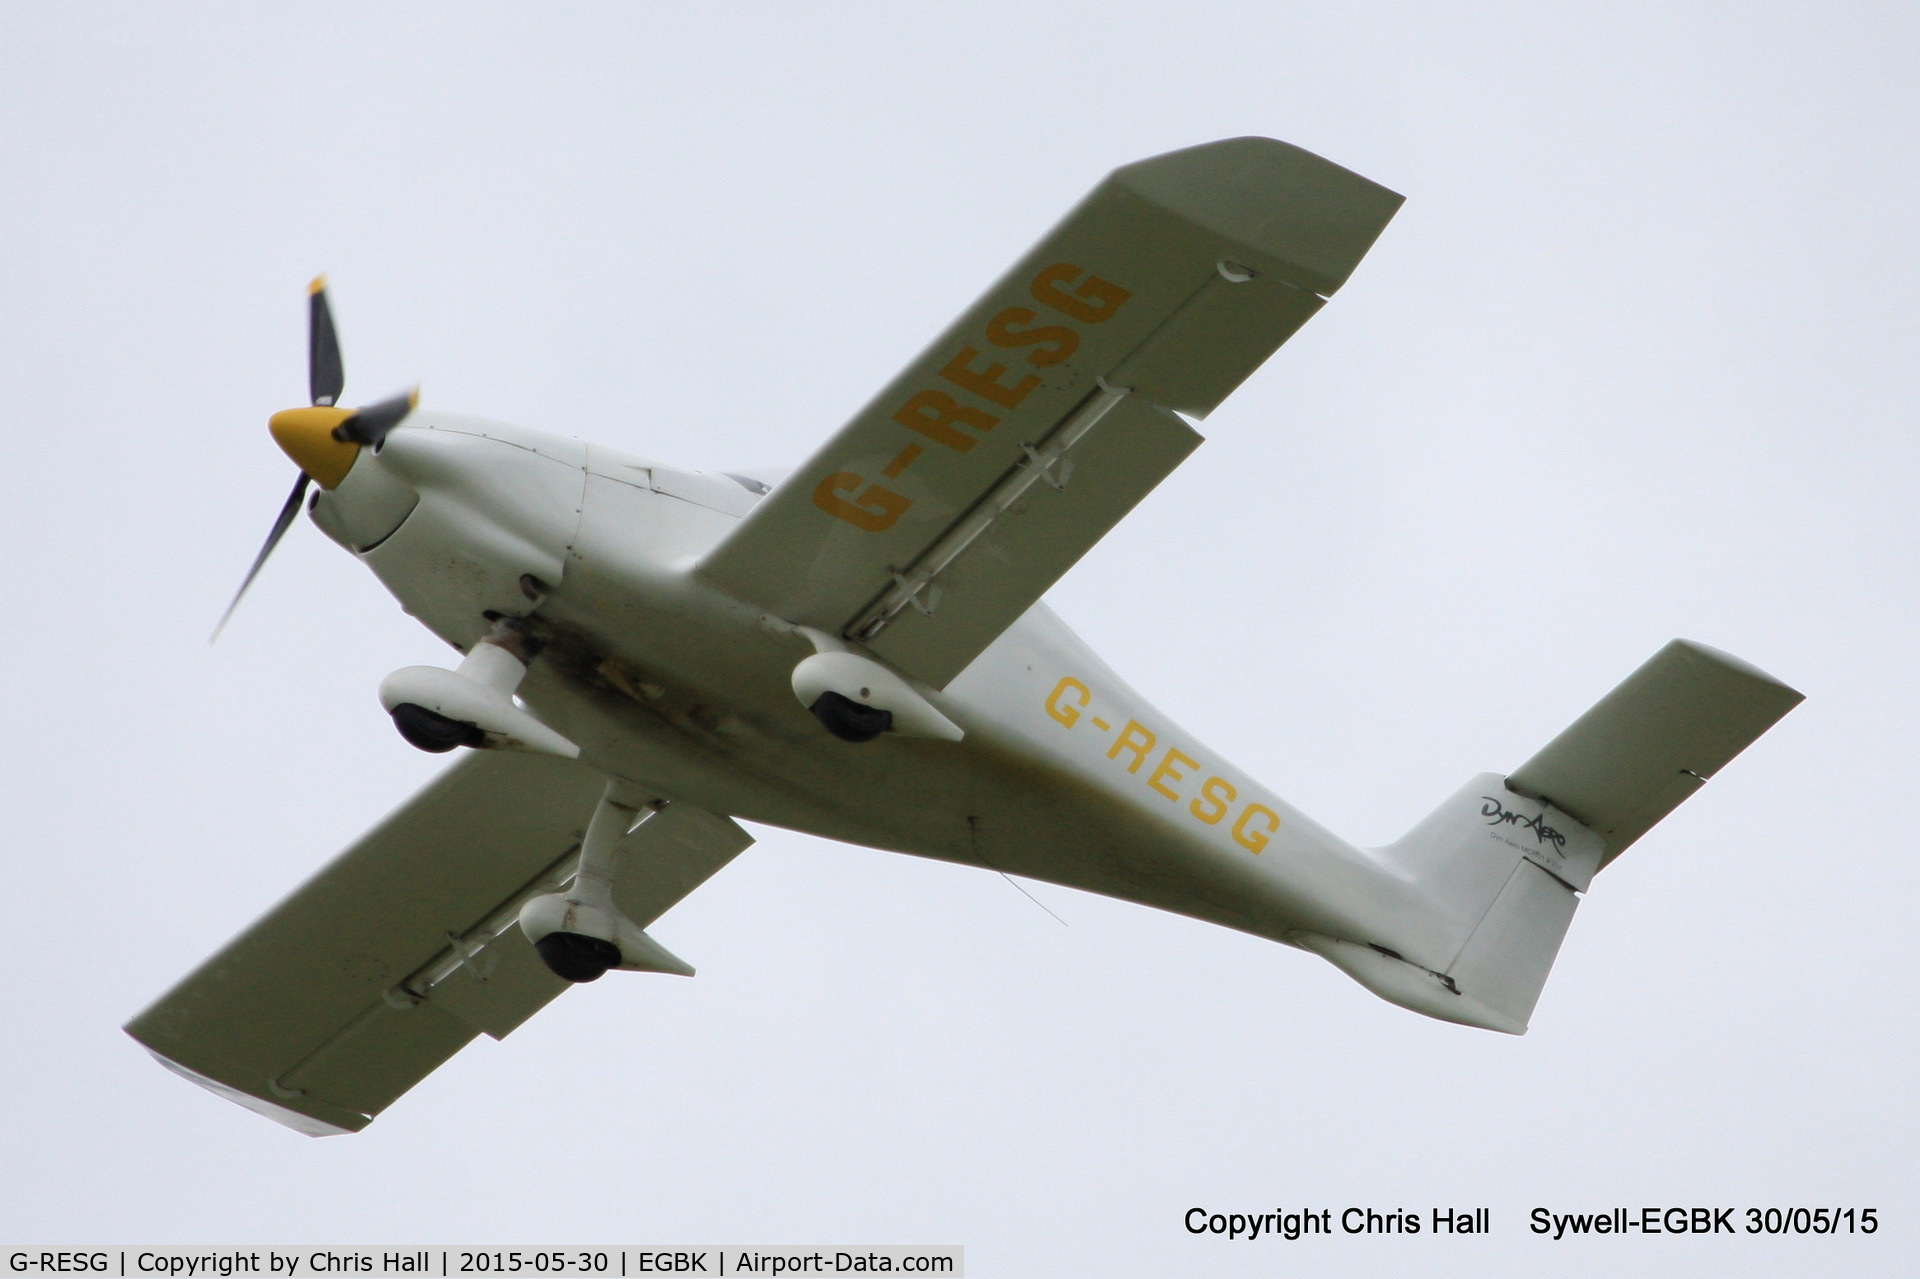 G-RESG, 2003 Dyn'Aero MCR-01 Club C/N PFA 301A-13994, at Aeroexpo 2015